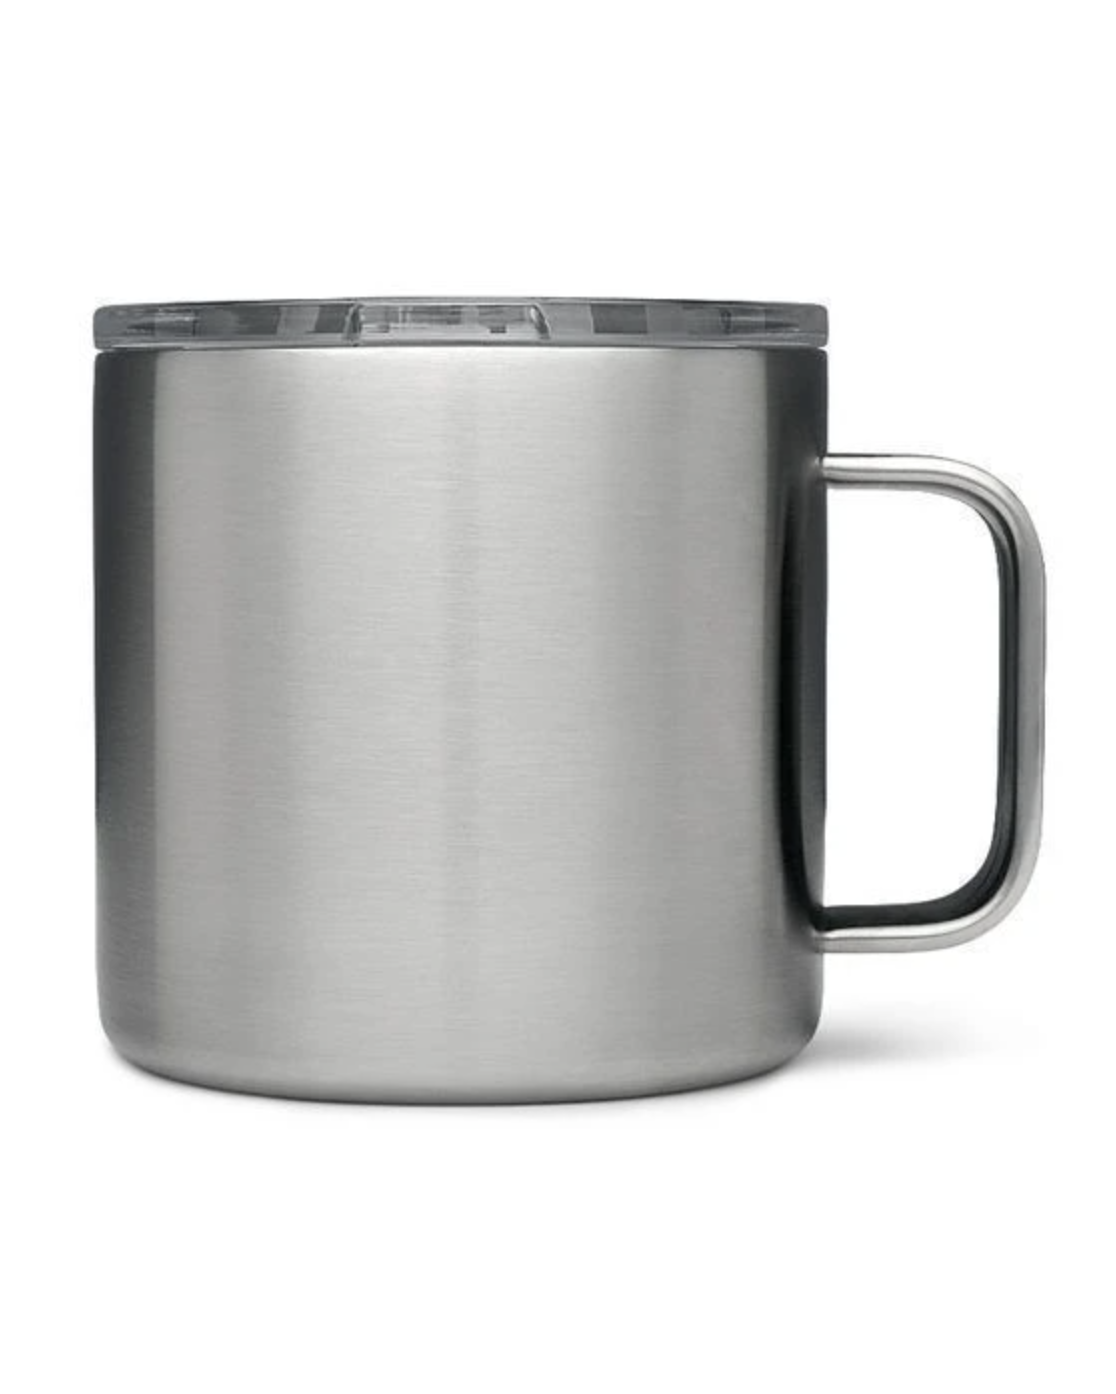 Rambler Mug 14oz - Stainless Steel